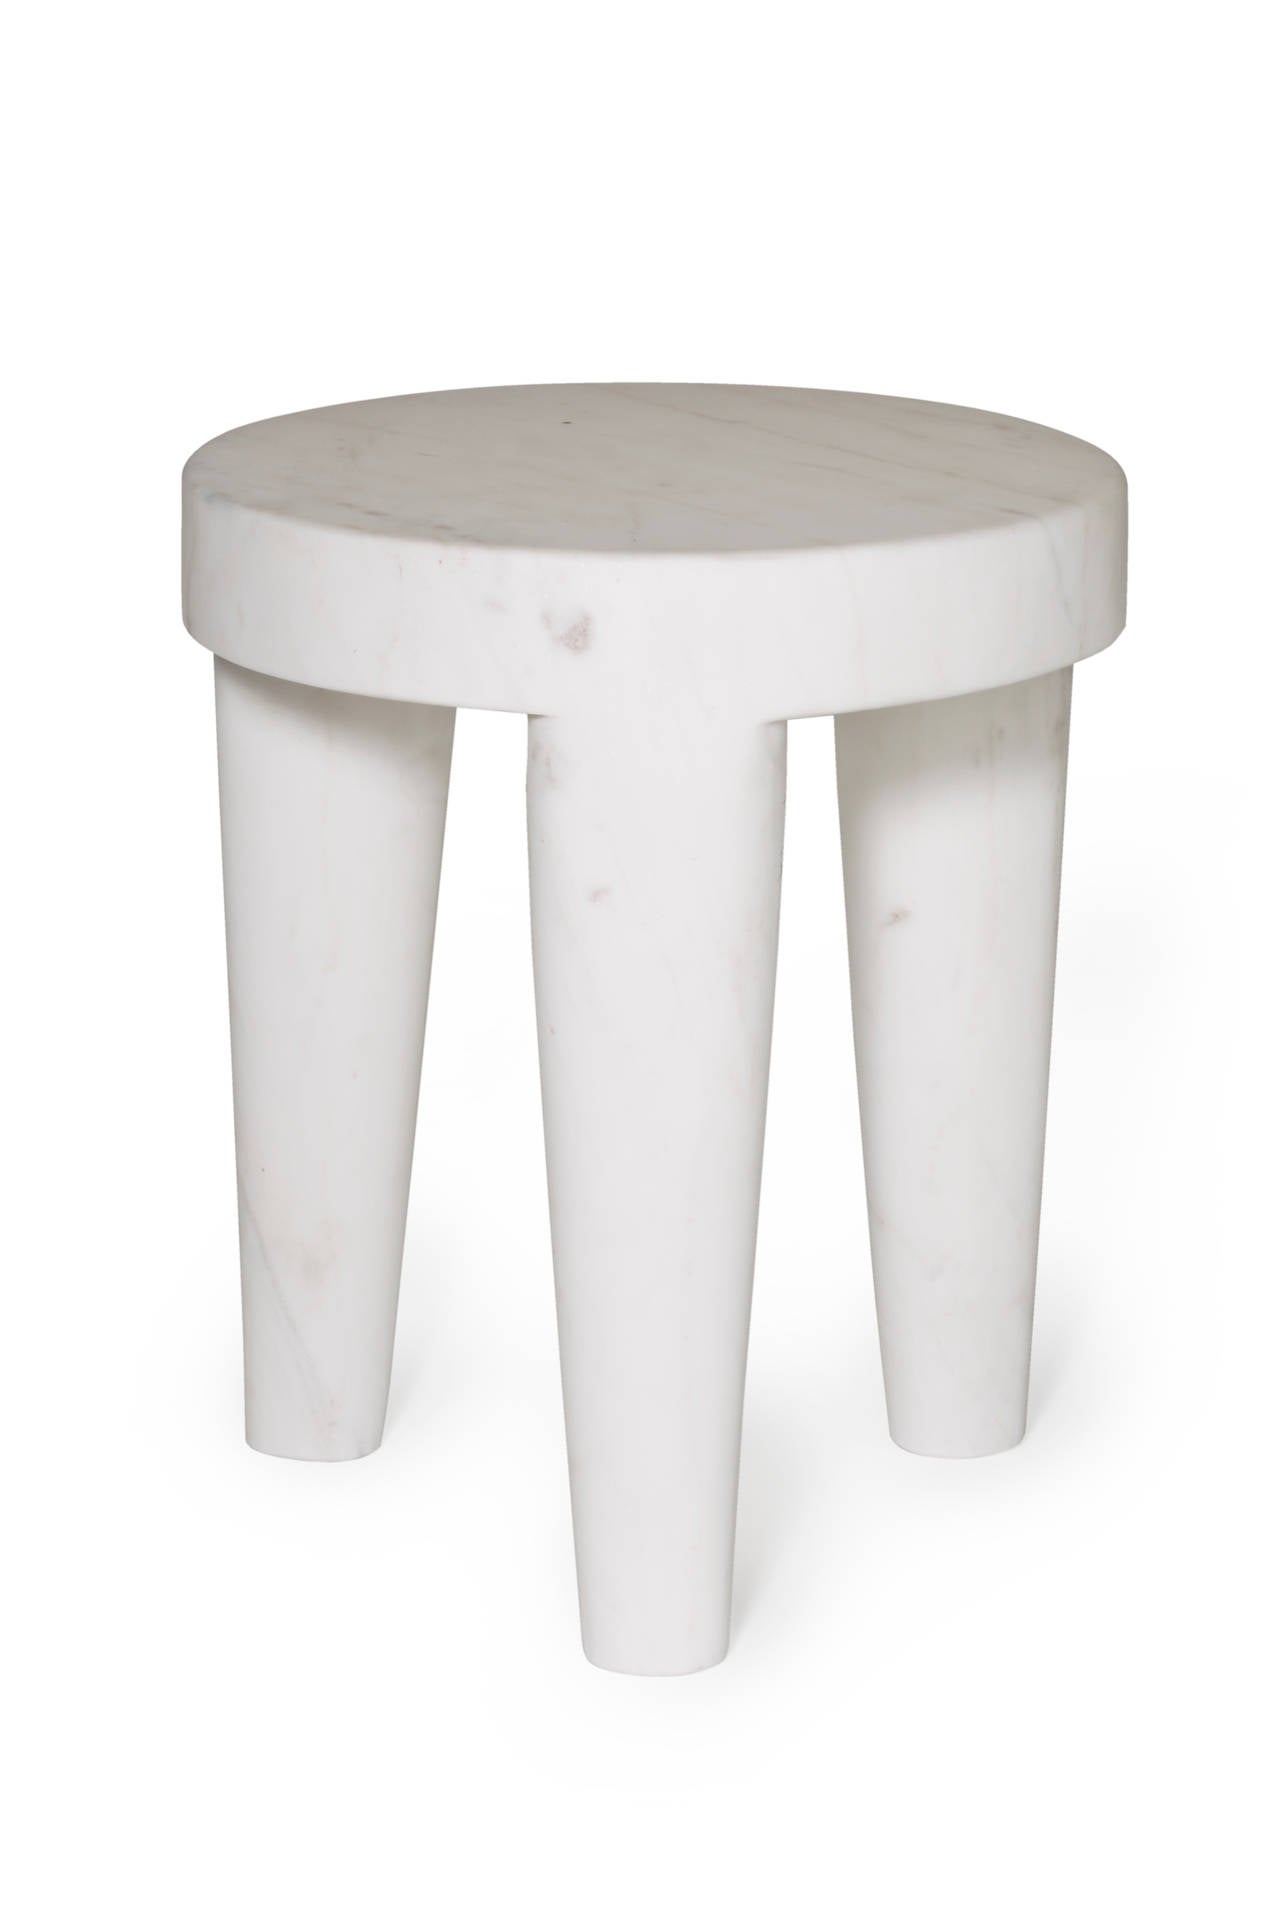 marble stools